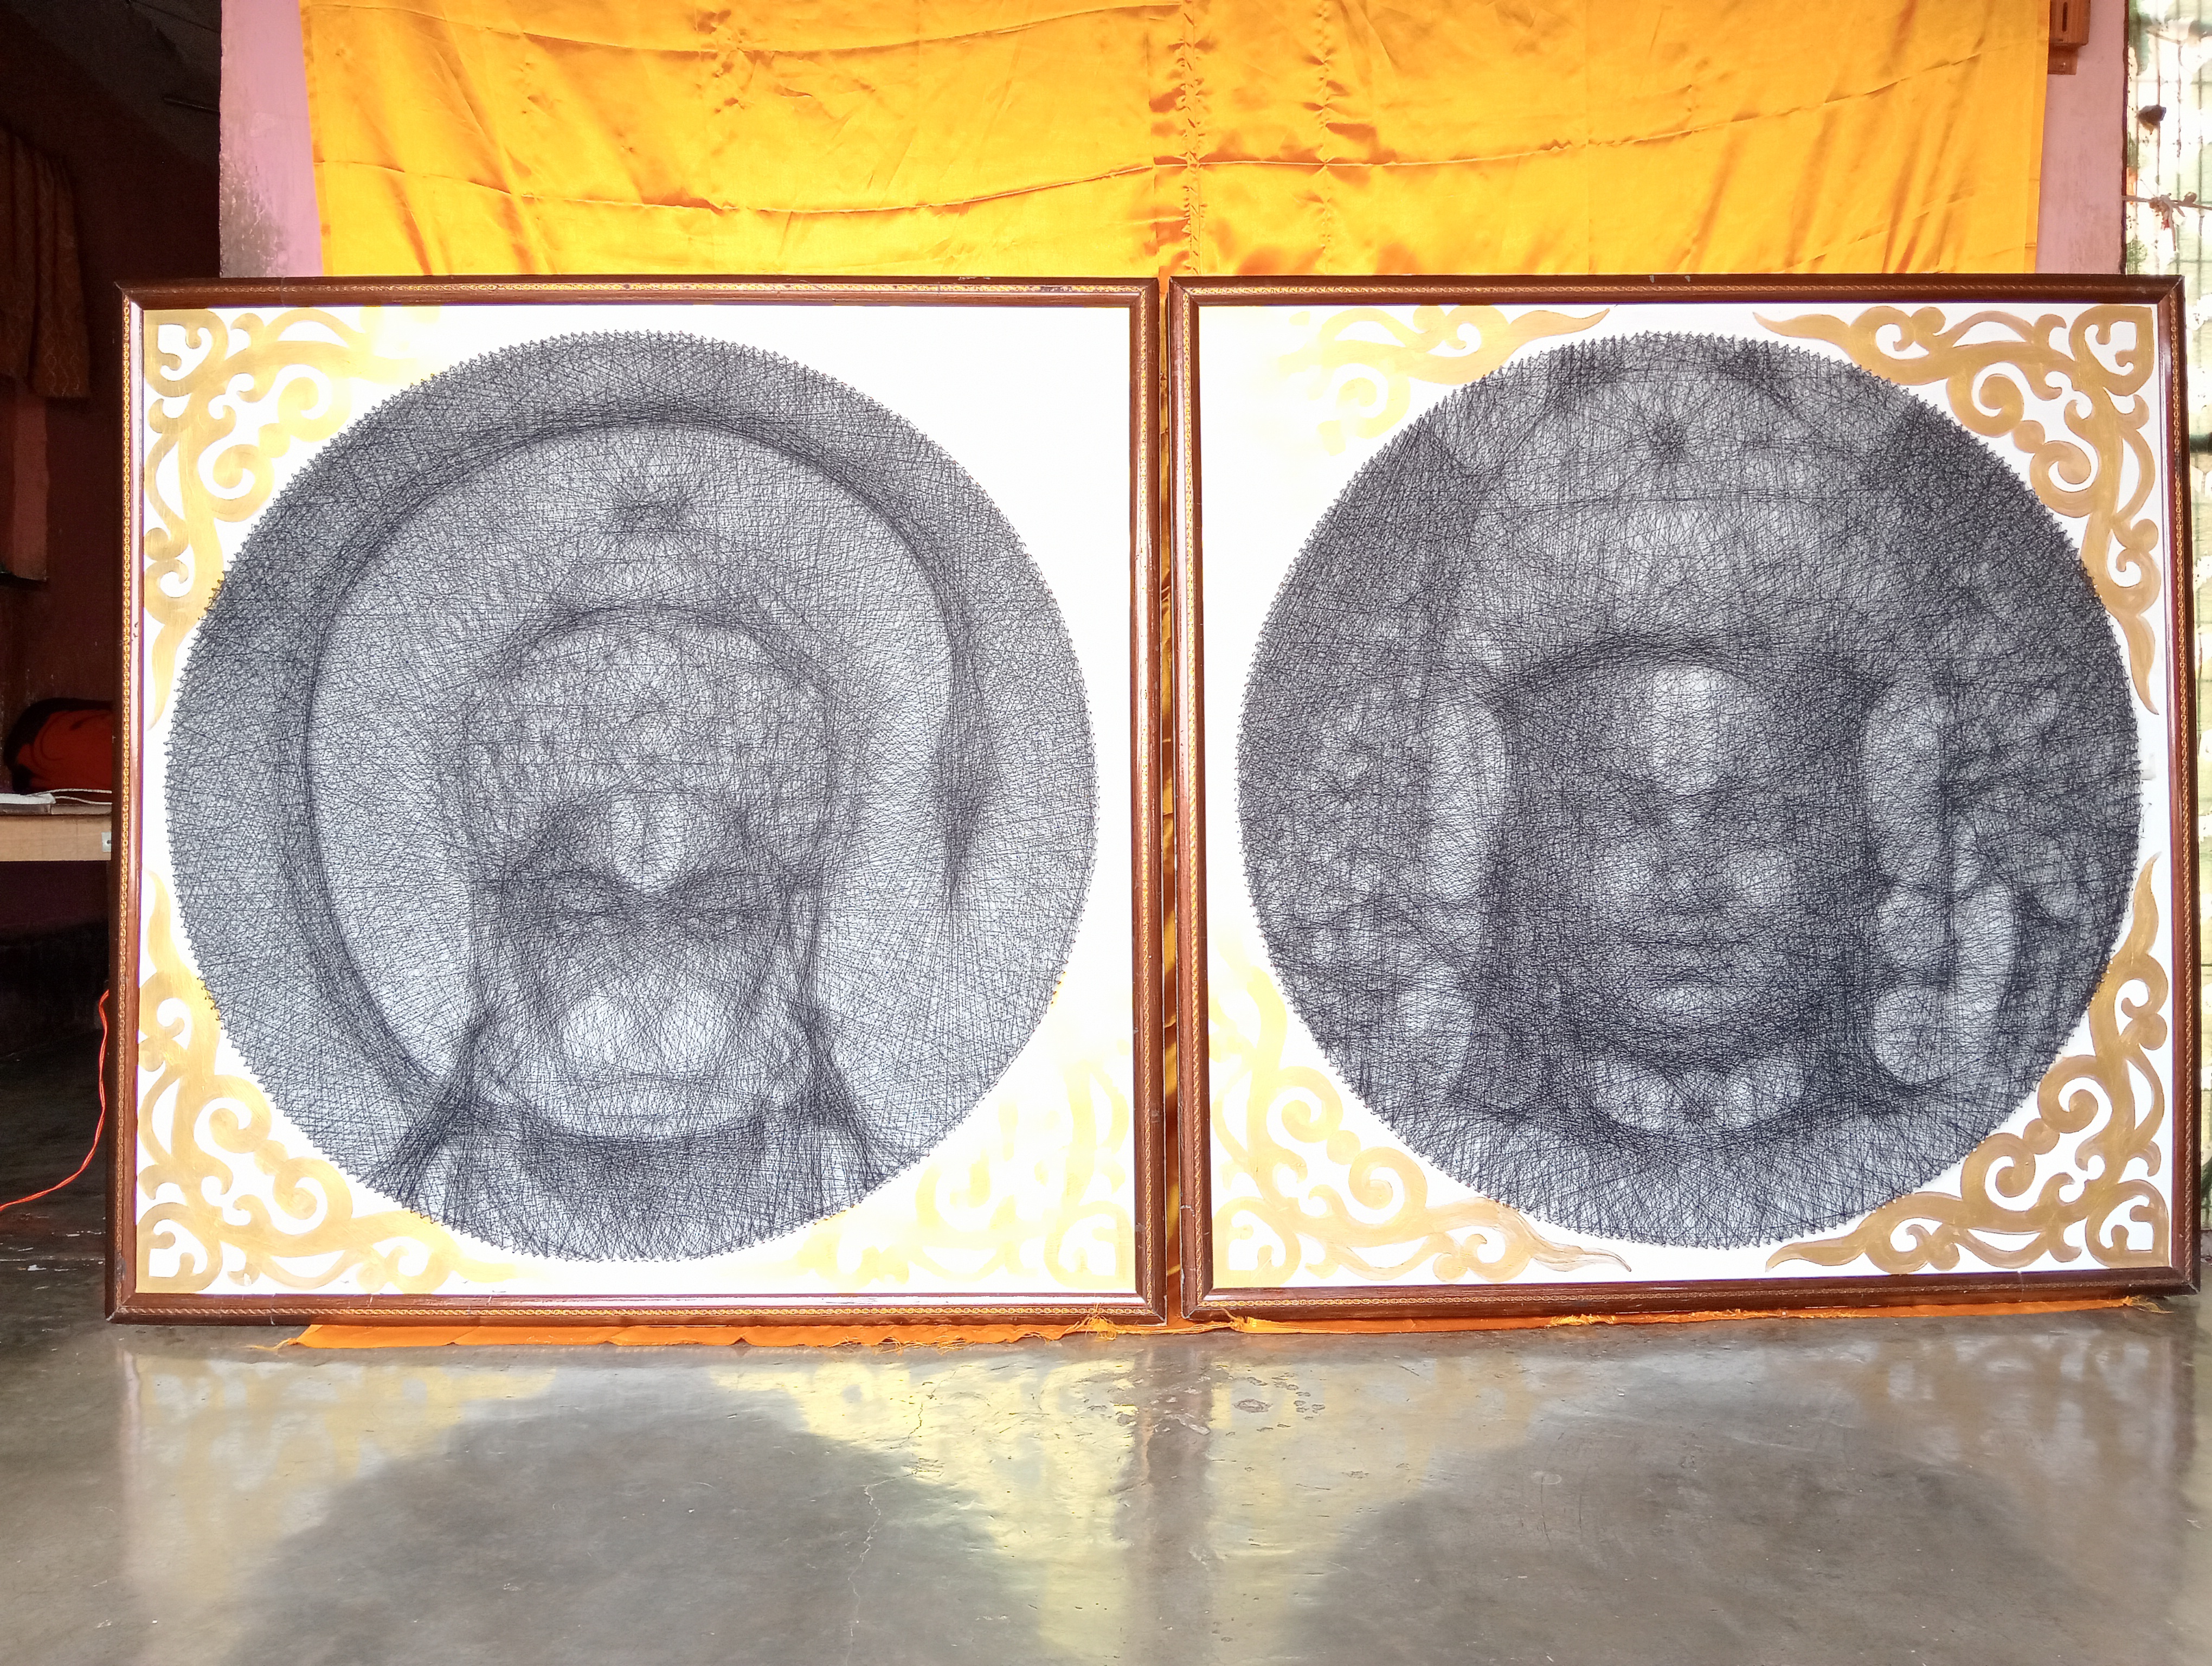 रमन चंद्रवंशी ने तैैयार की अनोखी प्रतिमाएं